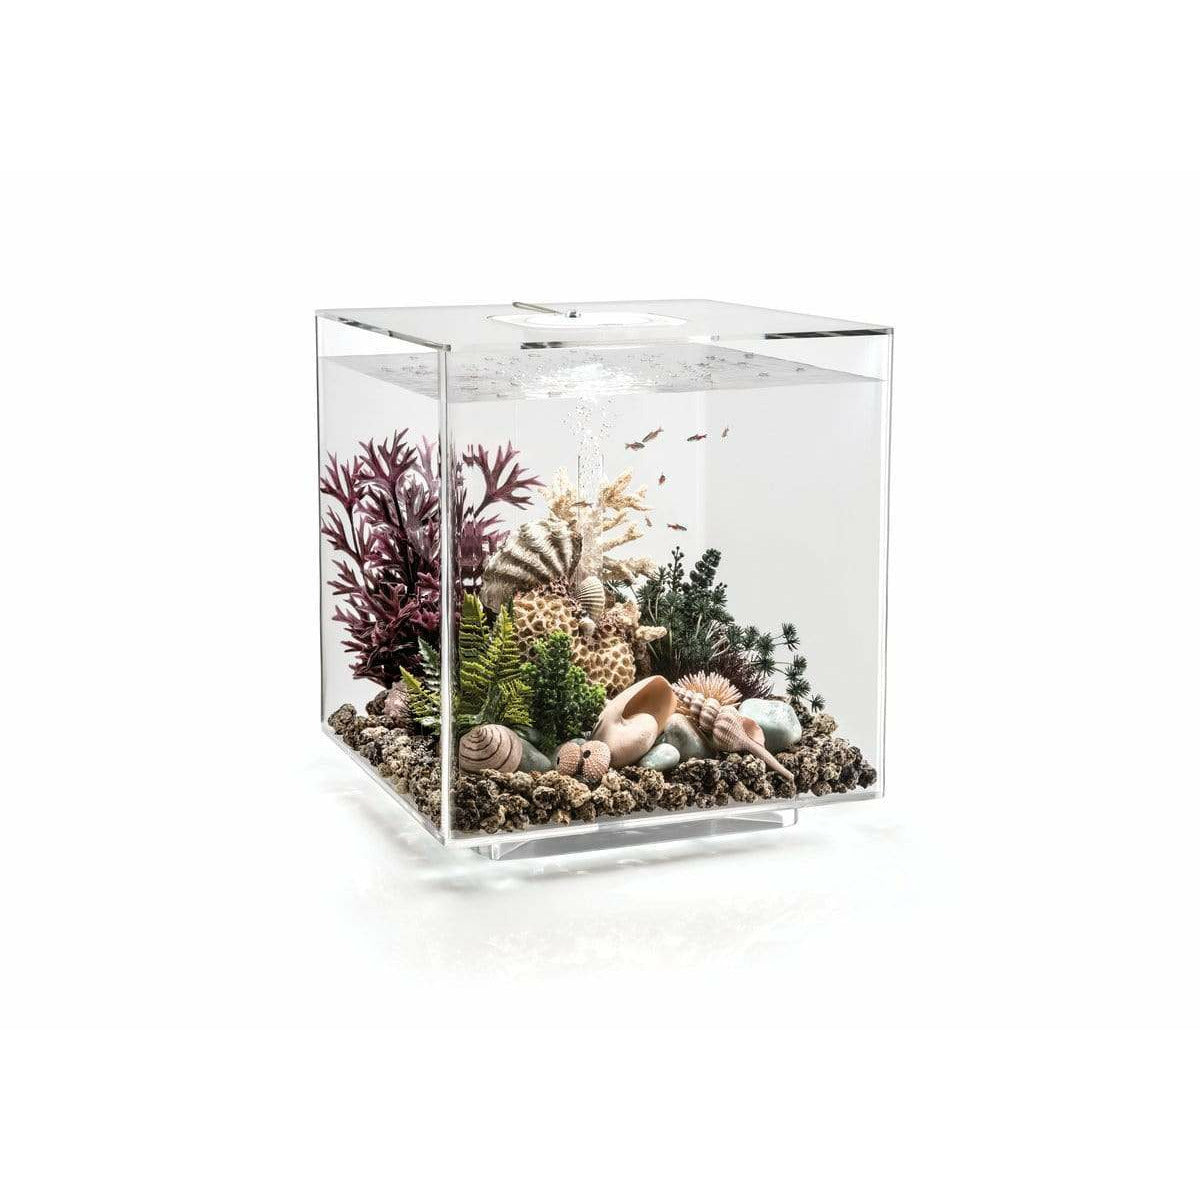 Aquarium biOrb Cube